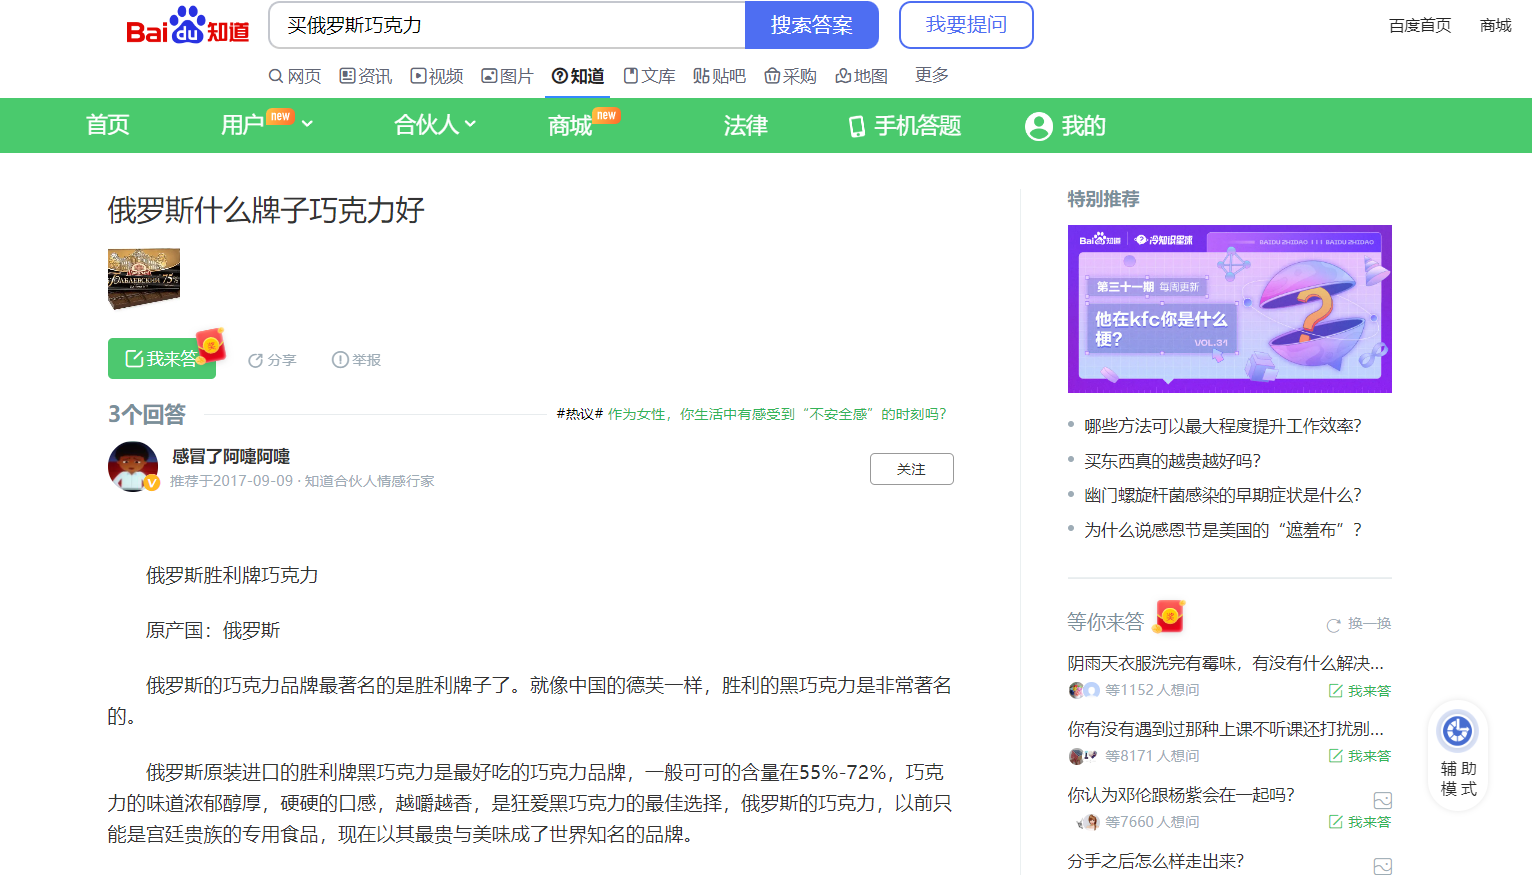 Baidu Zhidao - популярная платформа вопросов и ответов.